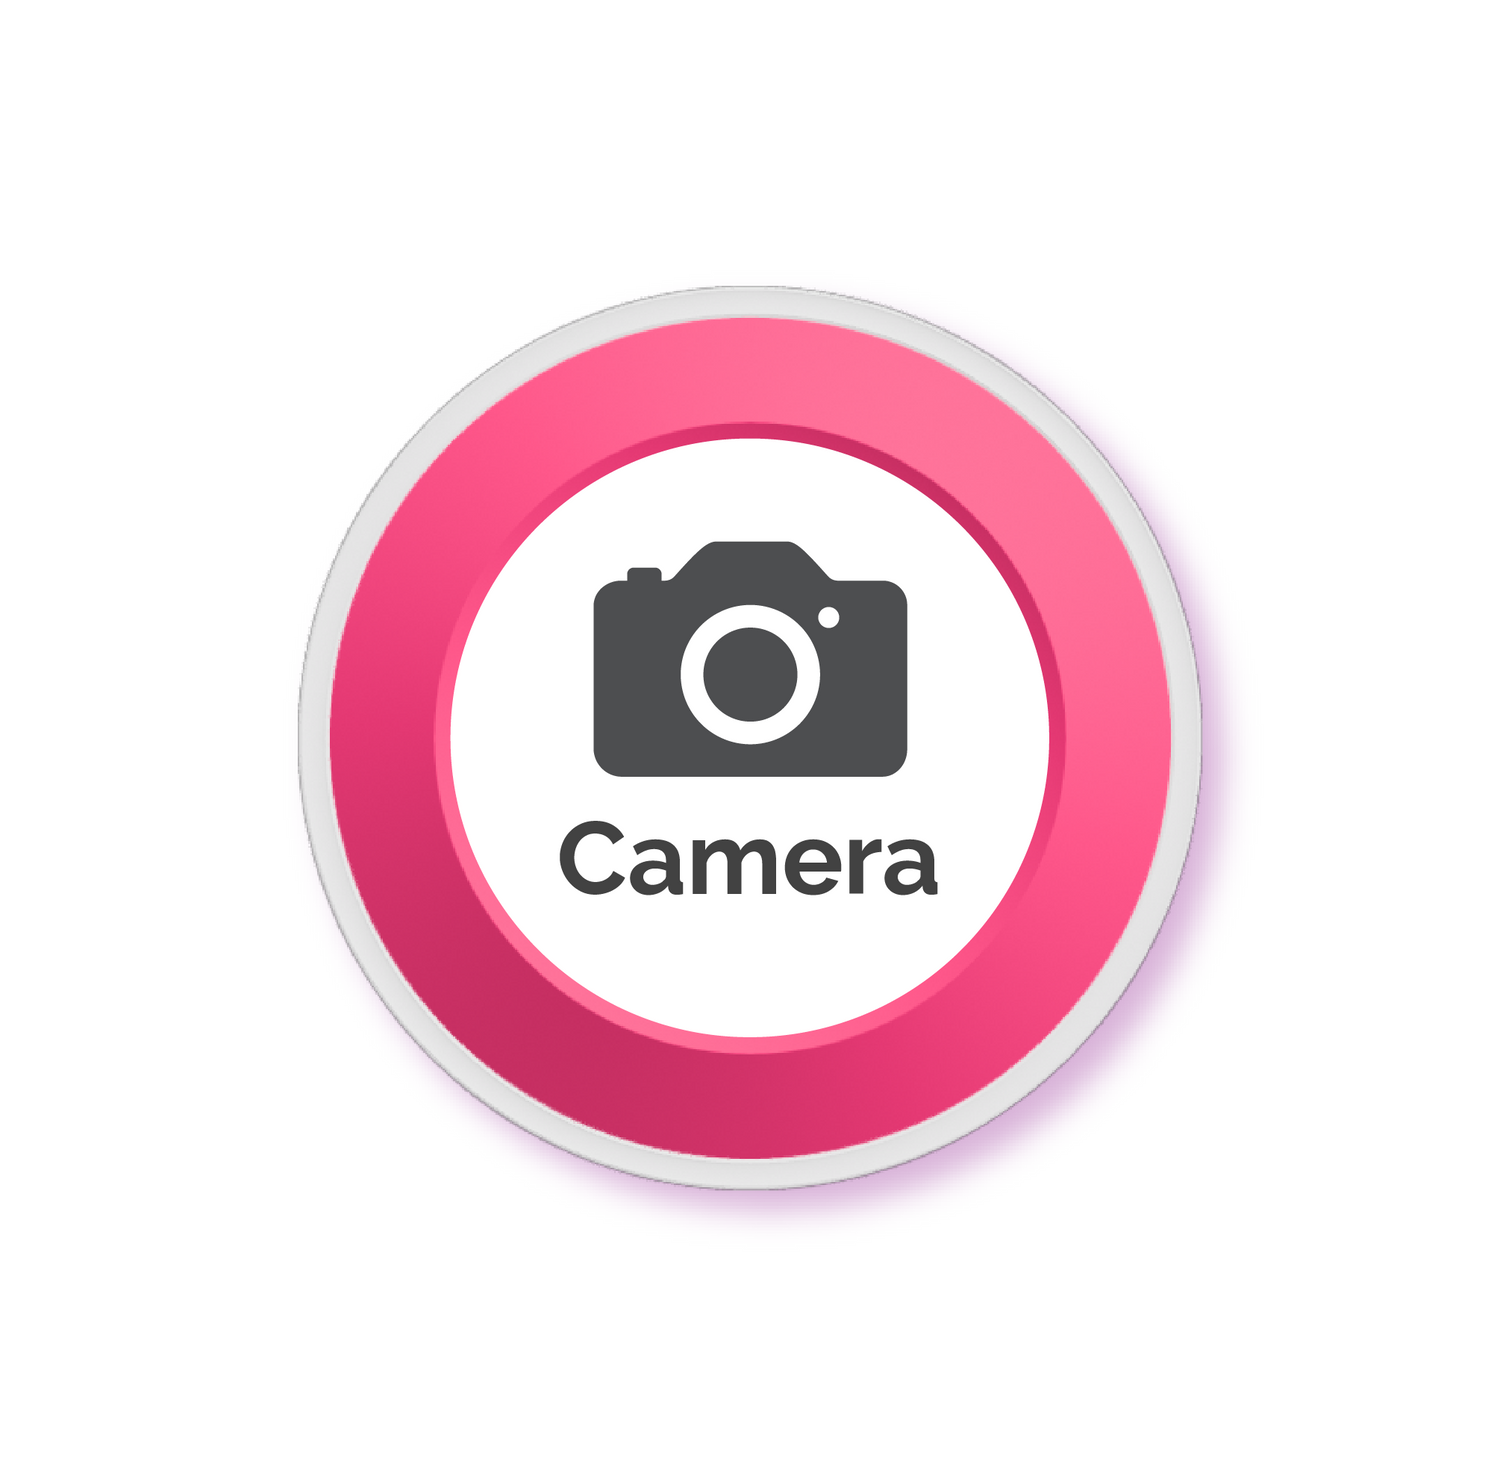 Camera button